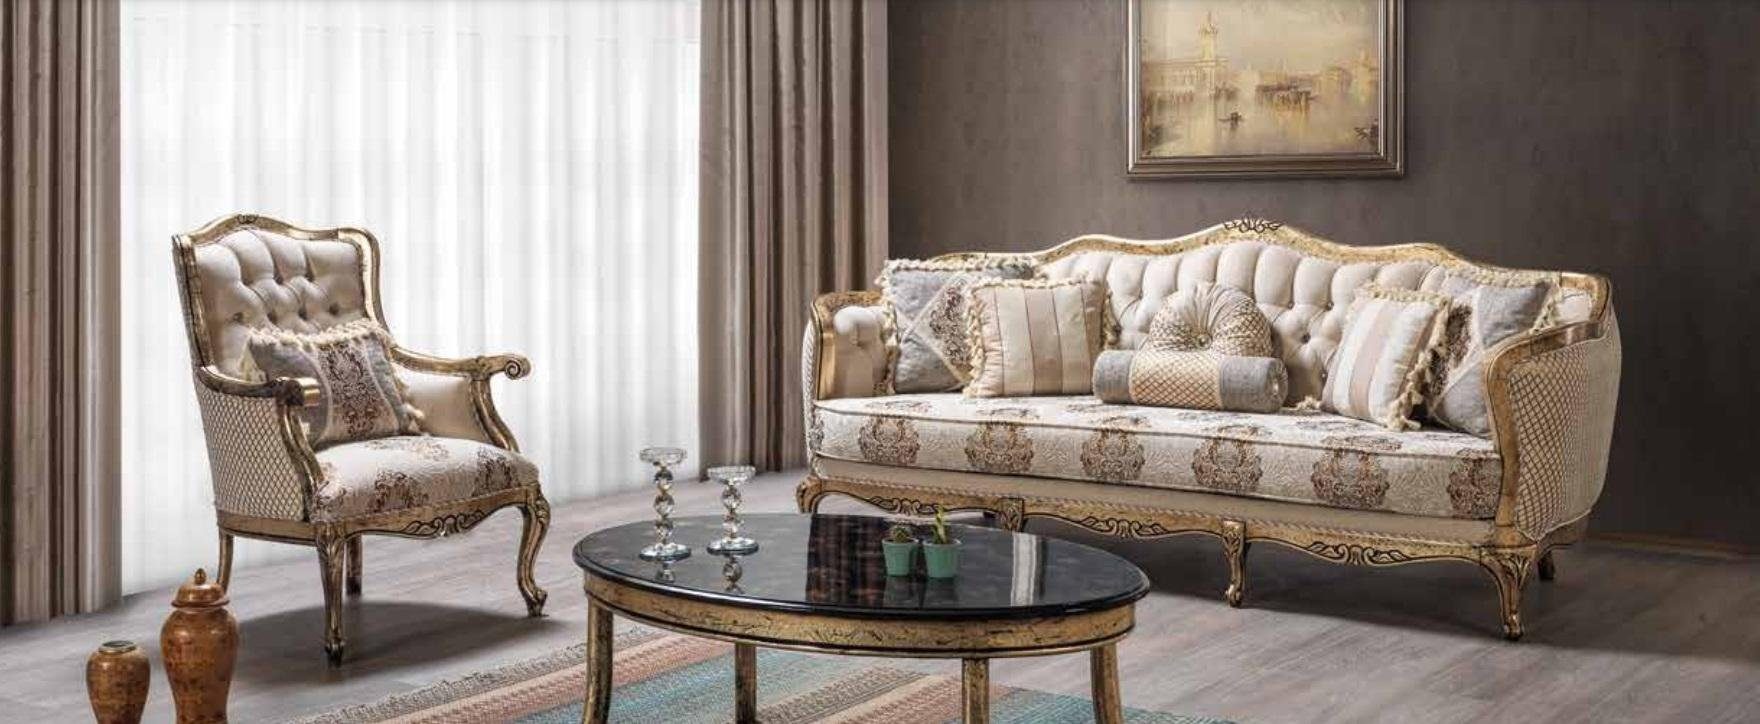 JVmoebel Wohnzimmer-Set Luxus Sofagarnitur 3+1 Sitzer Couchtisch Sofas Sitzer Stoff 3tlg., (Dreisitzer + Sessel + Couchtisch)